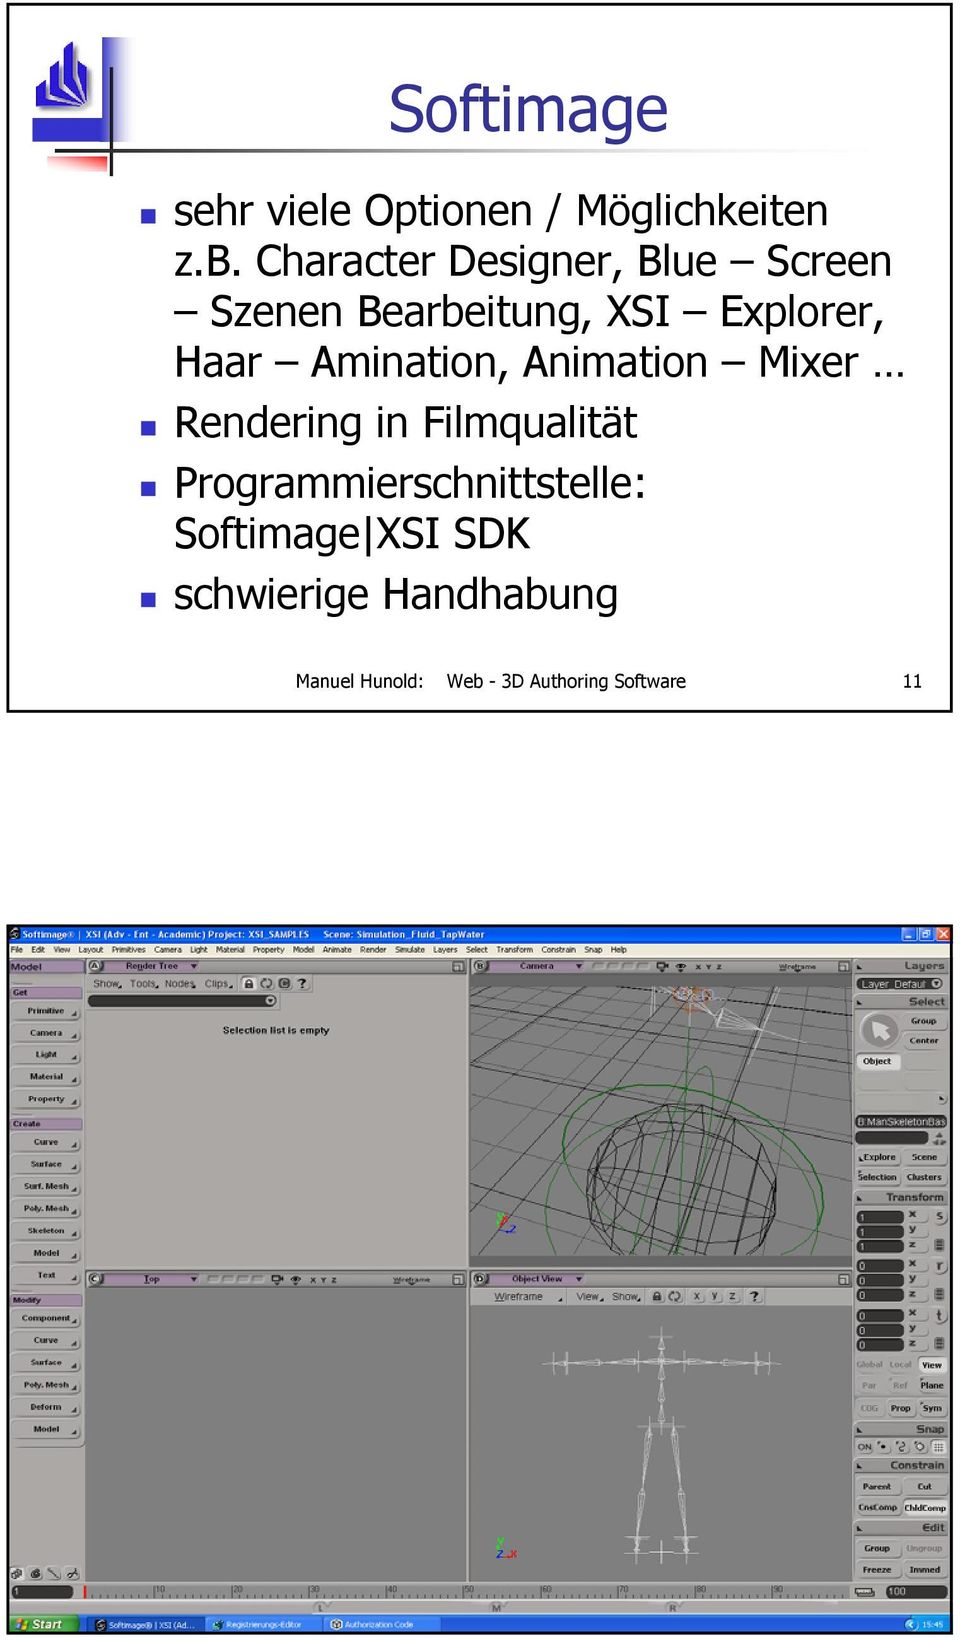 Animation Mixer Rendering in Filmqualität Programmierschnittstelle: Softimage XSI